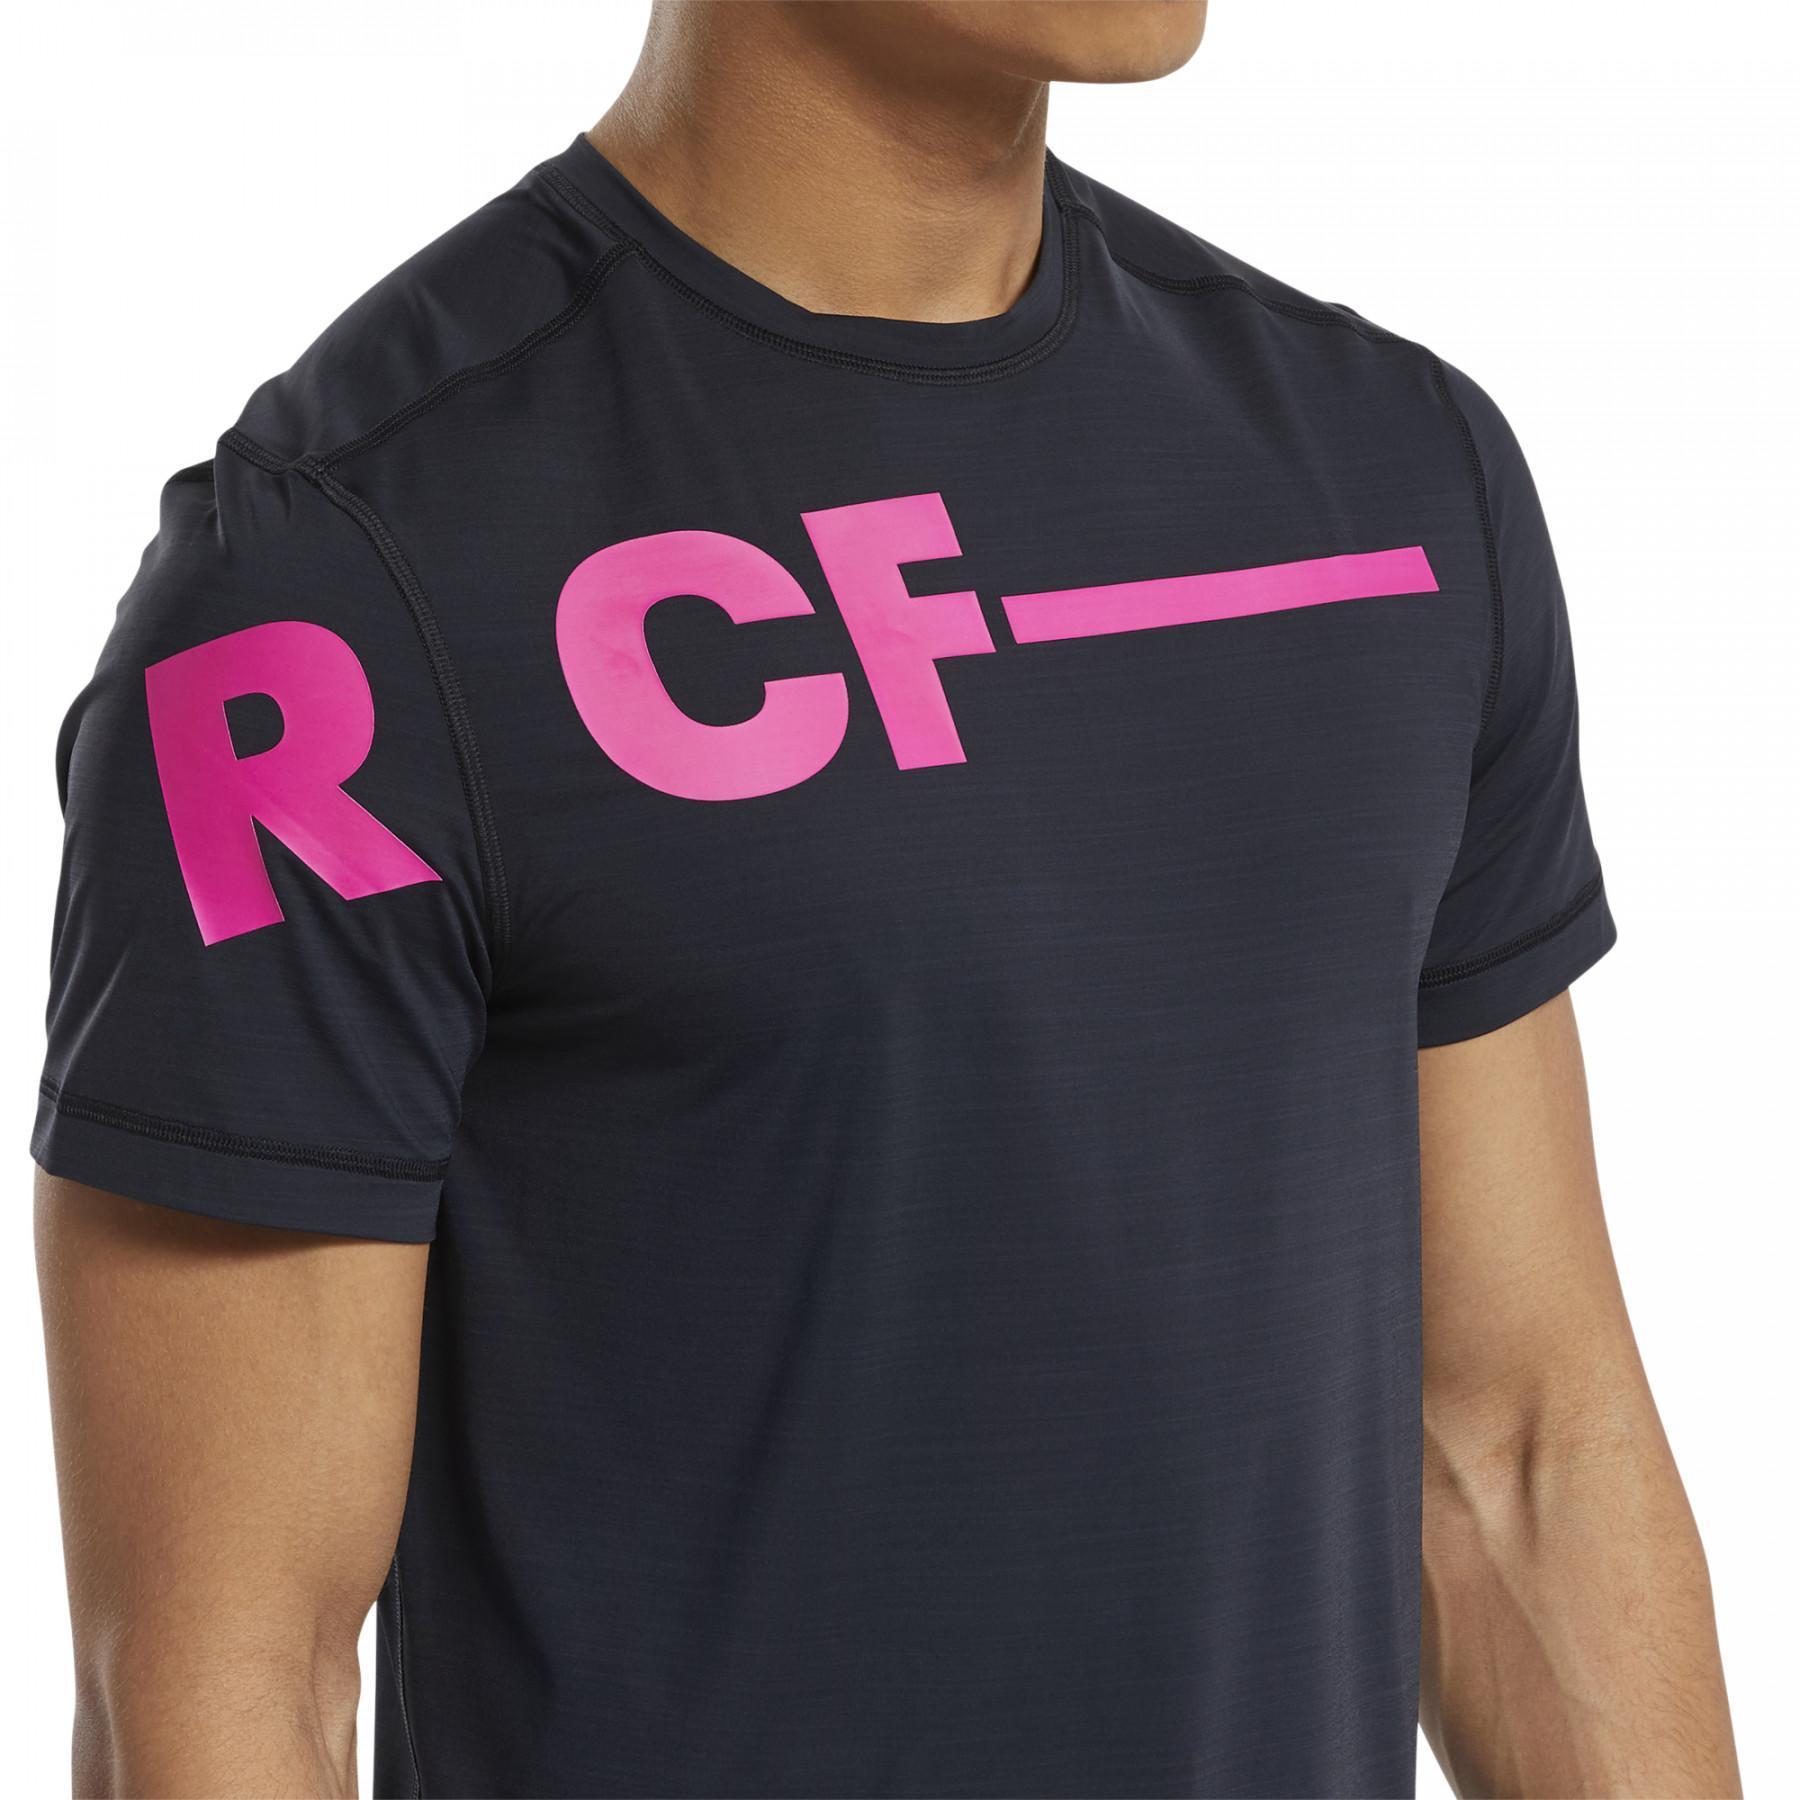 Koszulka Reebok CrossFit® Activchill